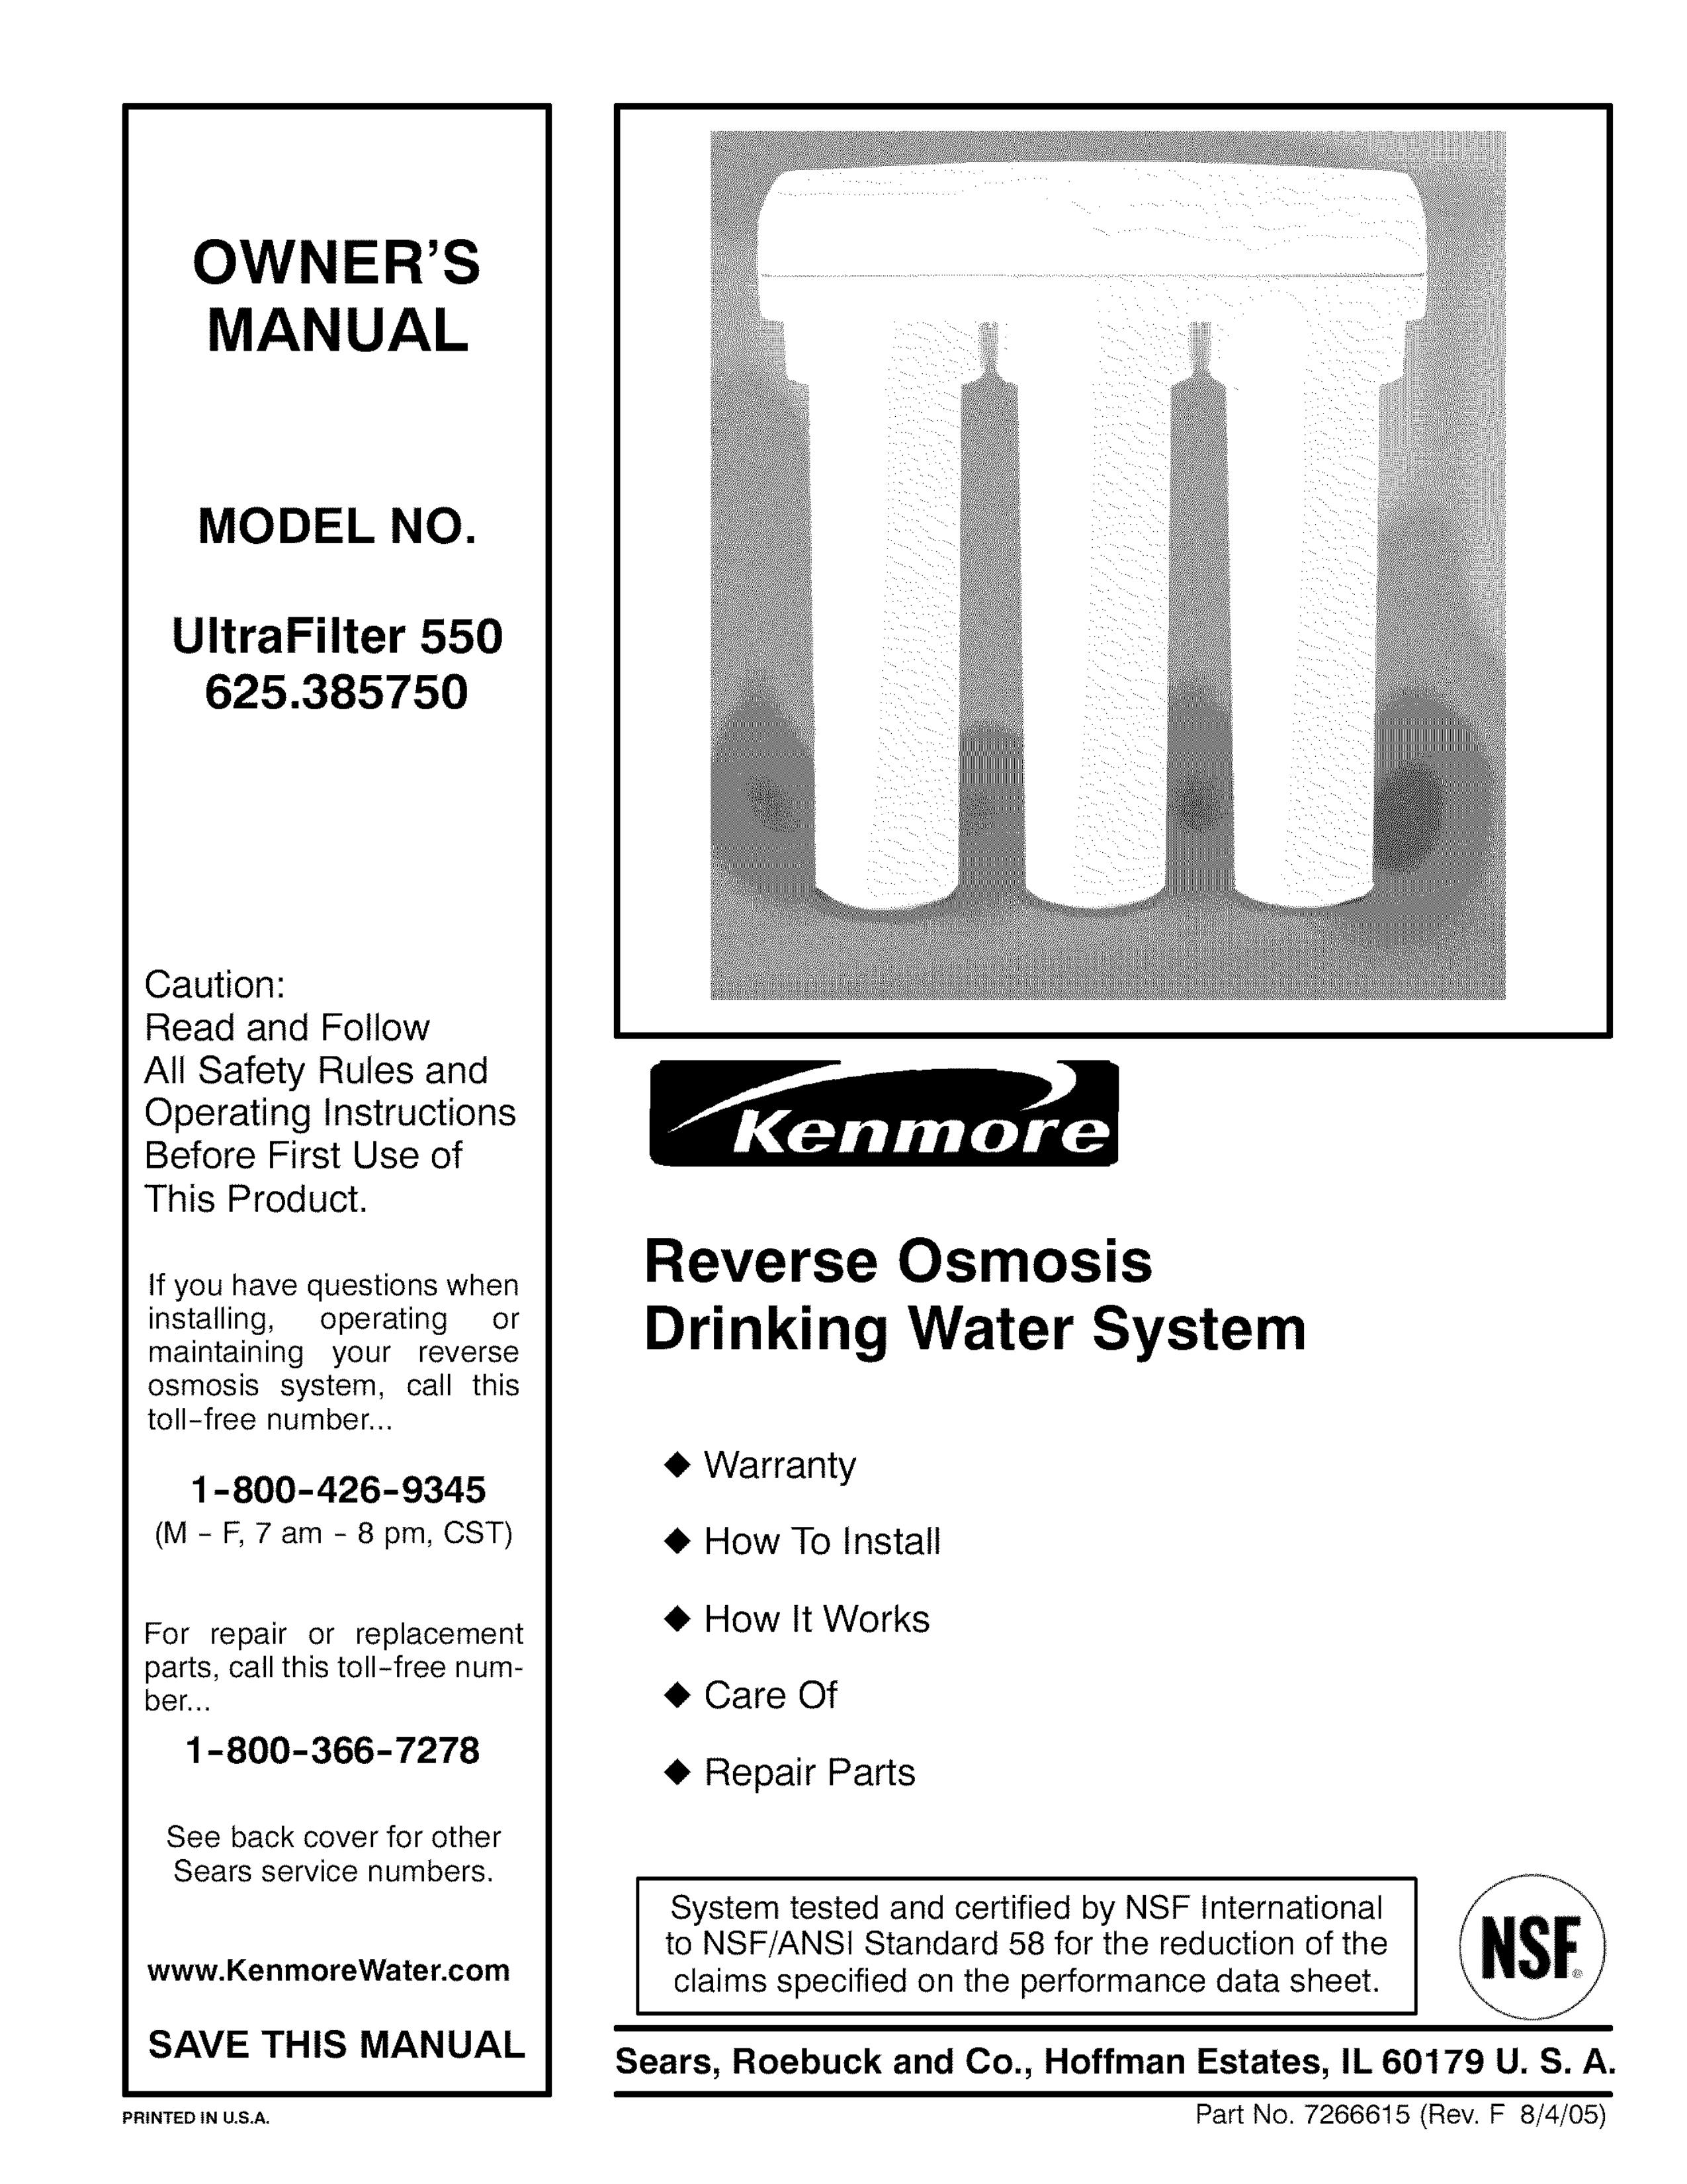 Kenmore 625.38575 Water Dispenser User Manual